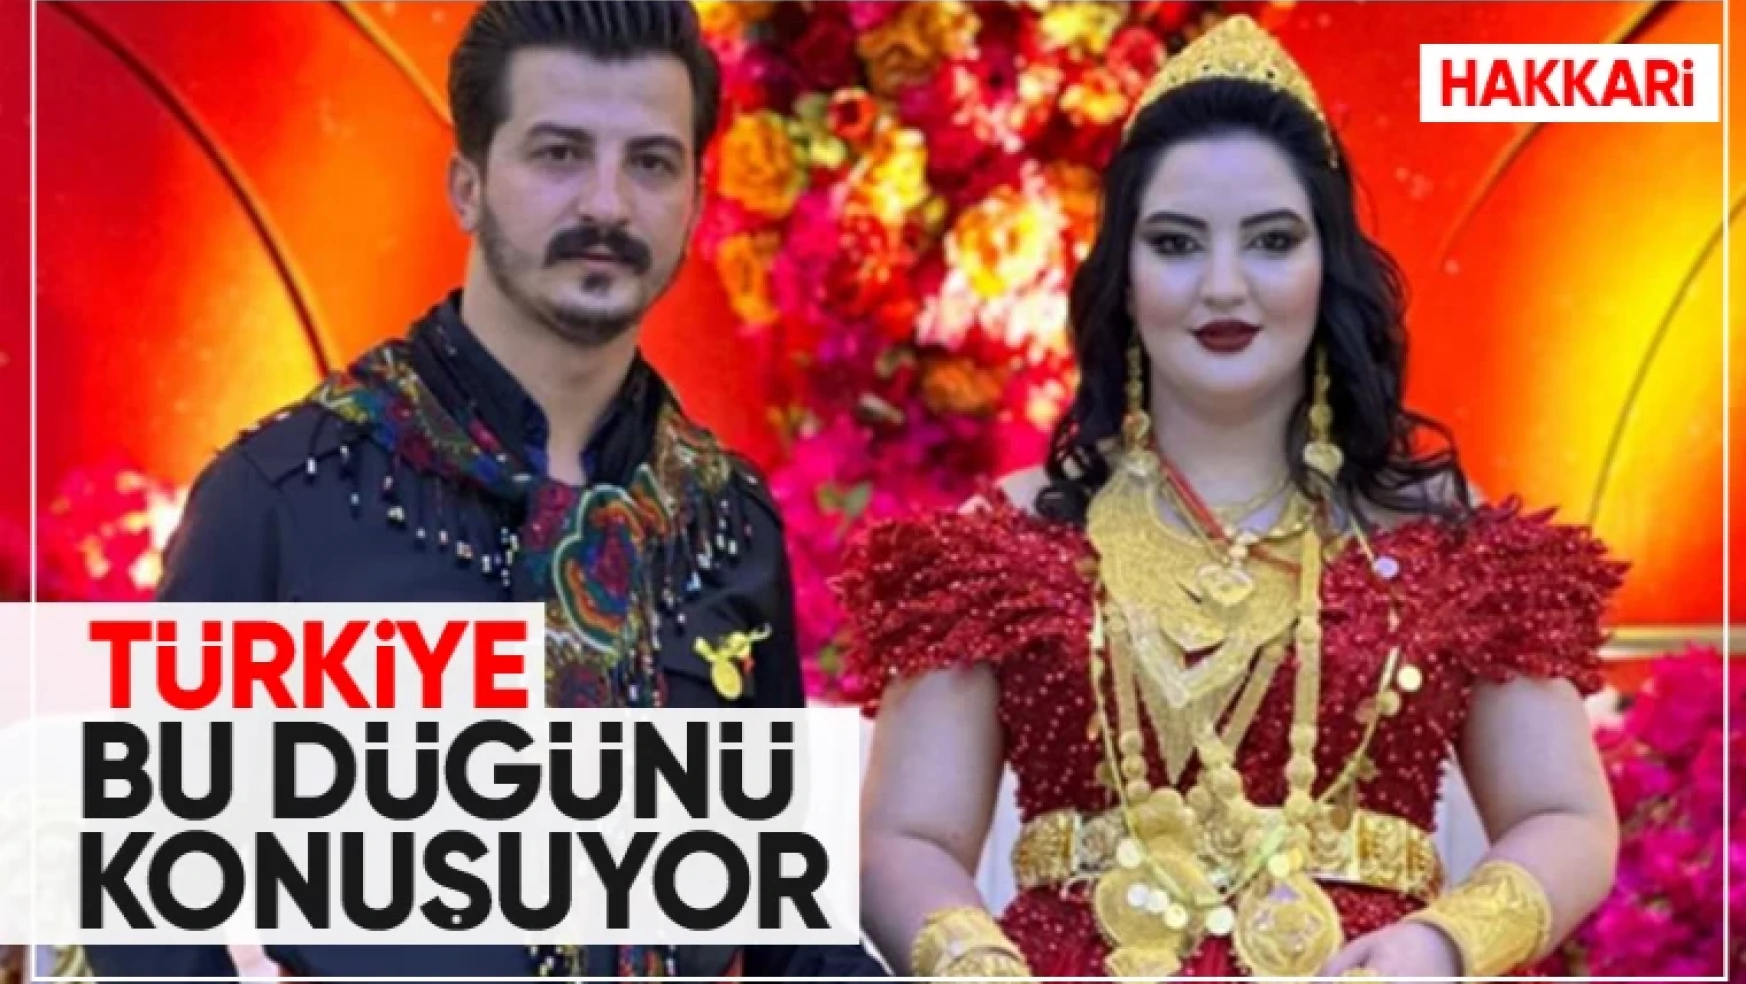 Türkiye Hakkari'deki aşiret düğününü konuşuyor